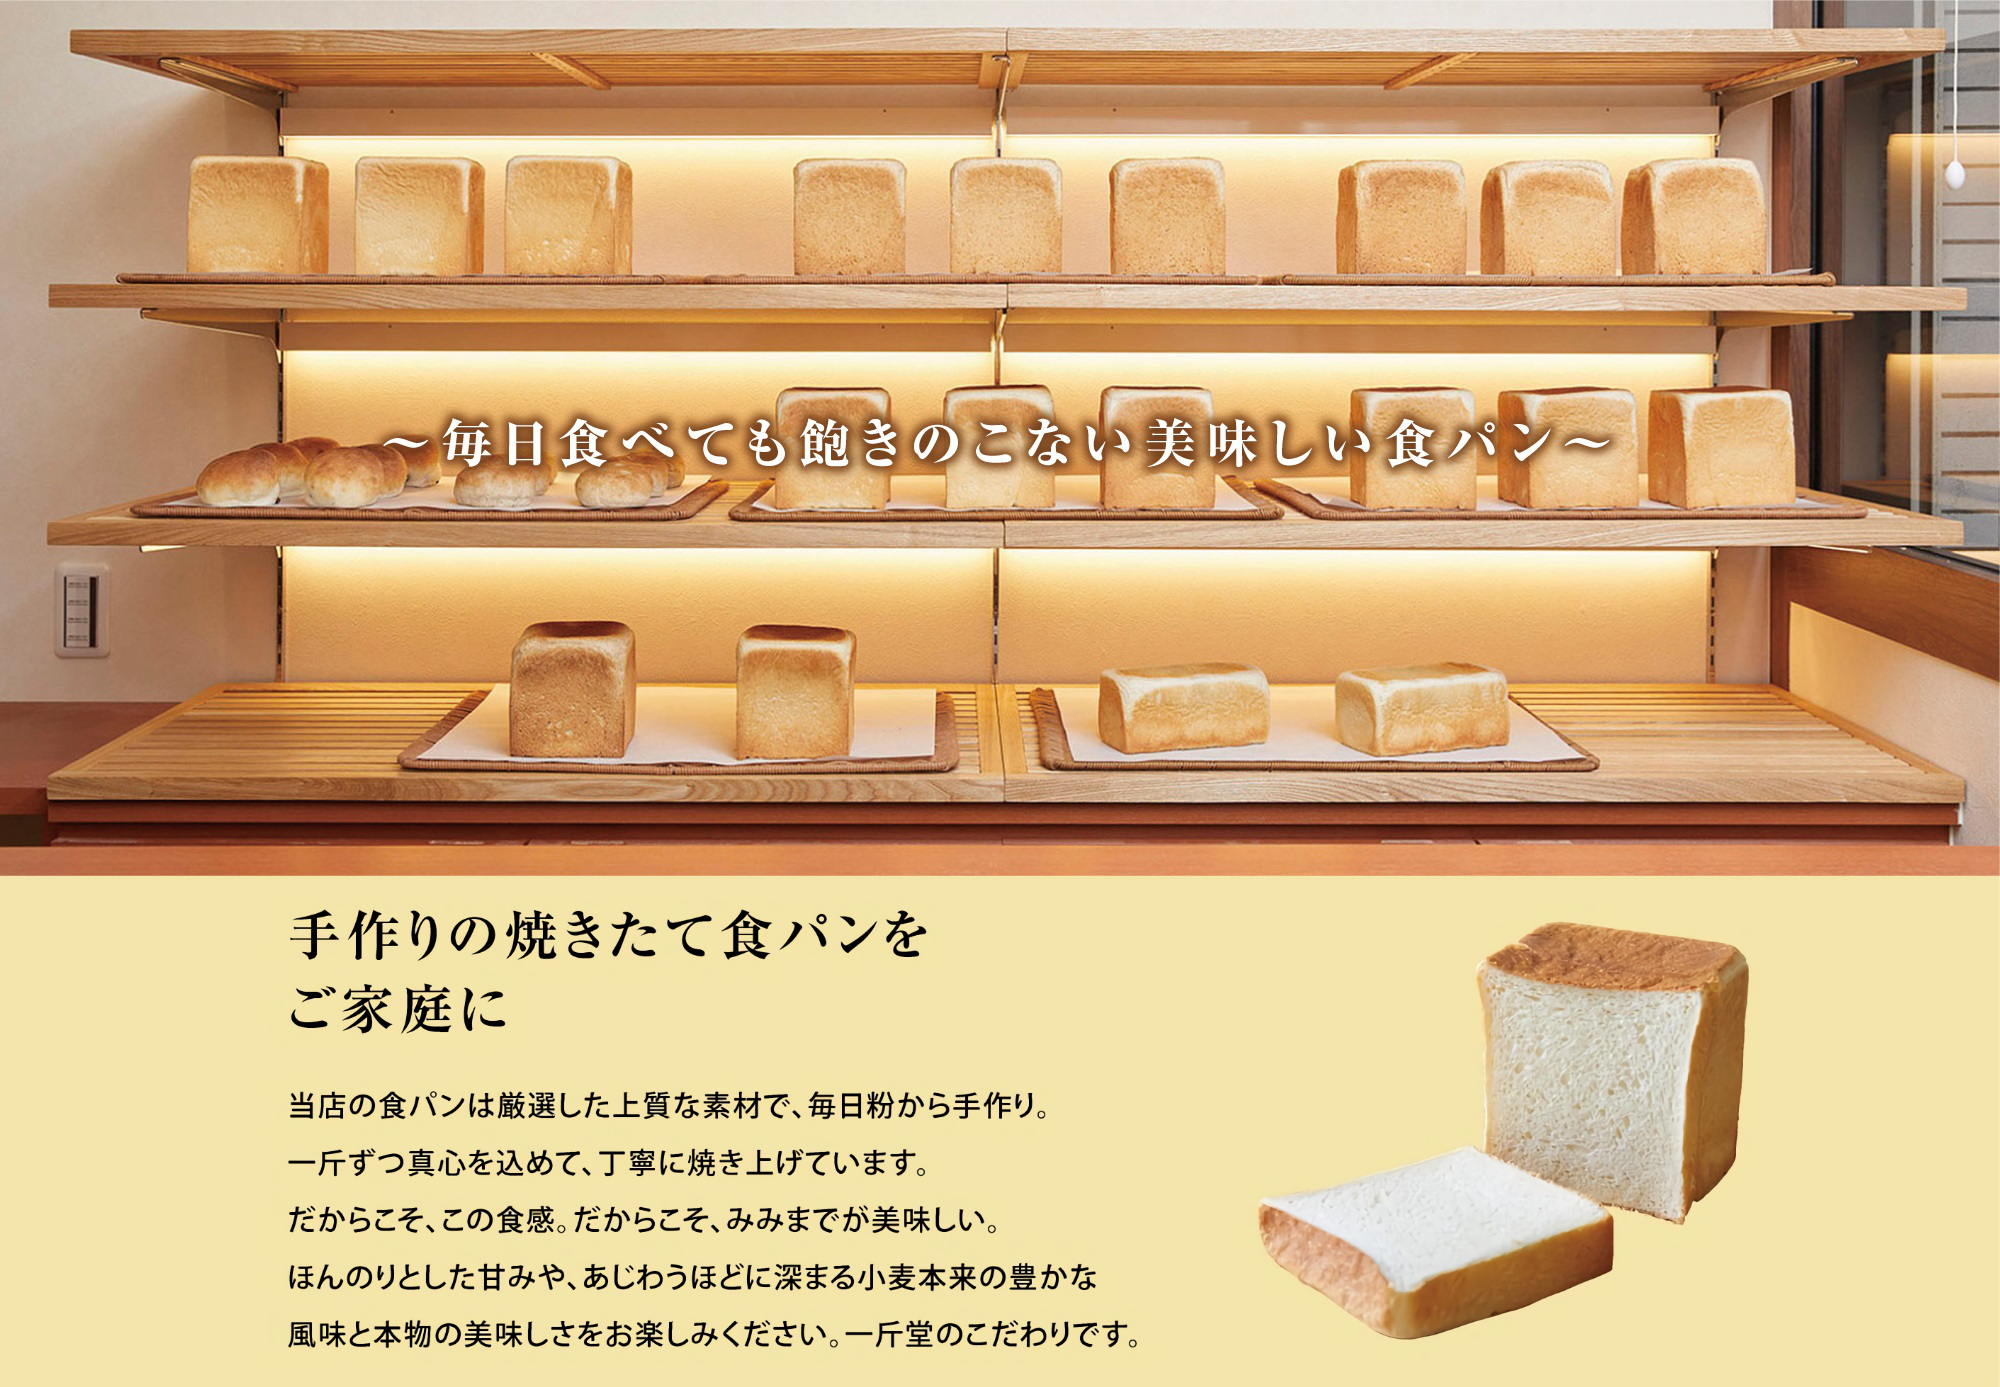 大阪あびこ 焼きたて食パン専門店「一斤堂」